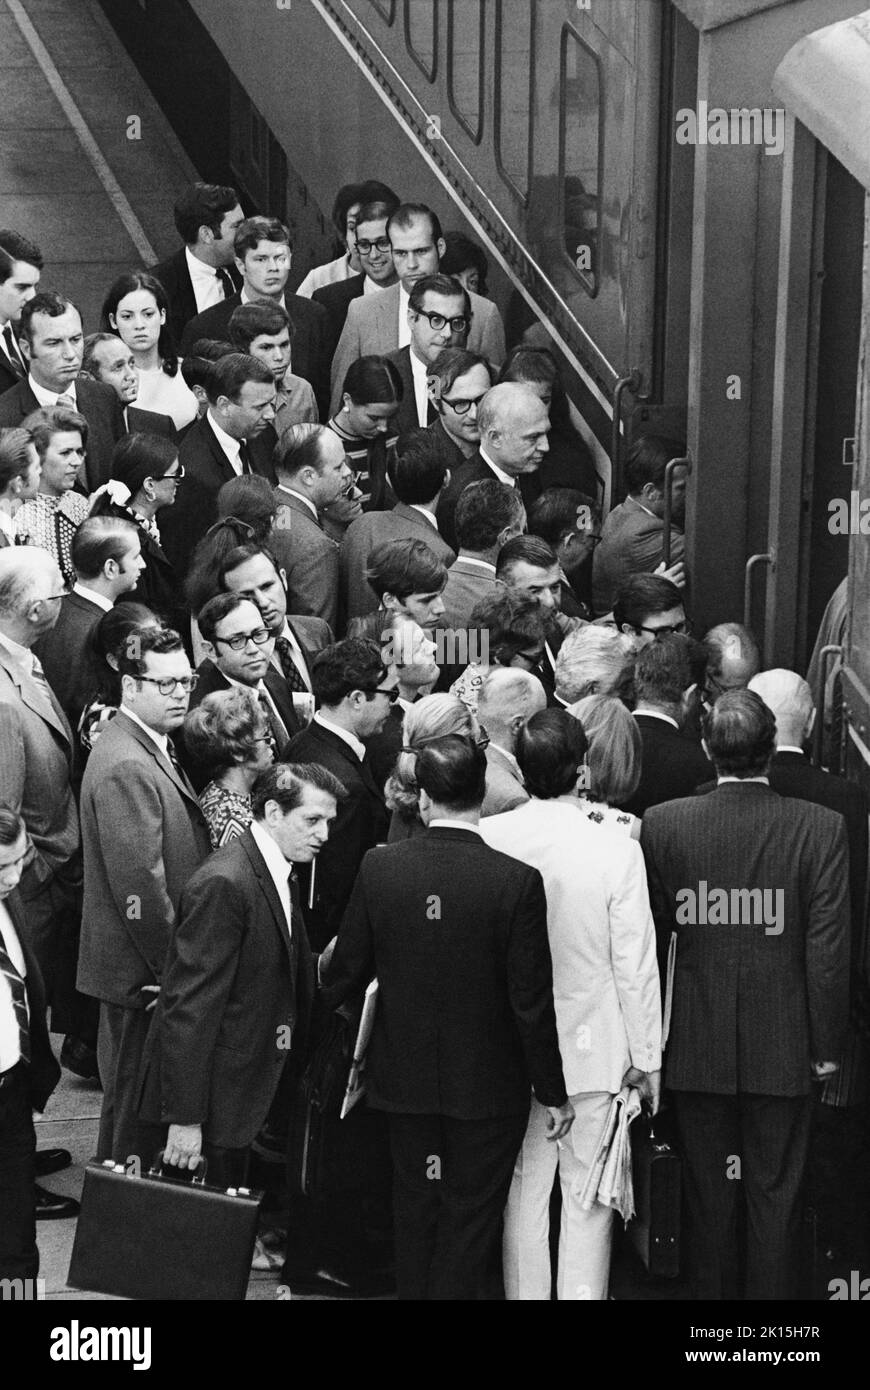 Pasajeros que se embarcan en un tren Penn Central en Scarsdale, Nueva York, alrededor de 1976. La mayoría de los trabajadores son blancos y hombres, mientras que las mujeres representan aproximadamente 1 en 5 de la fuerza laboral que se muestra aquí. Foto de stock